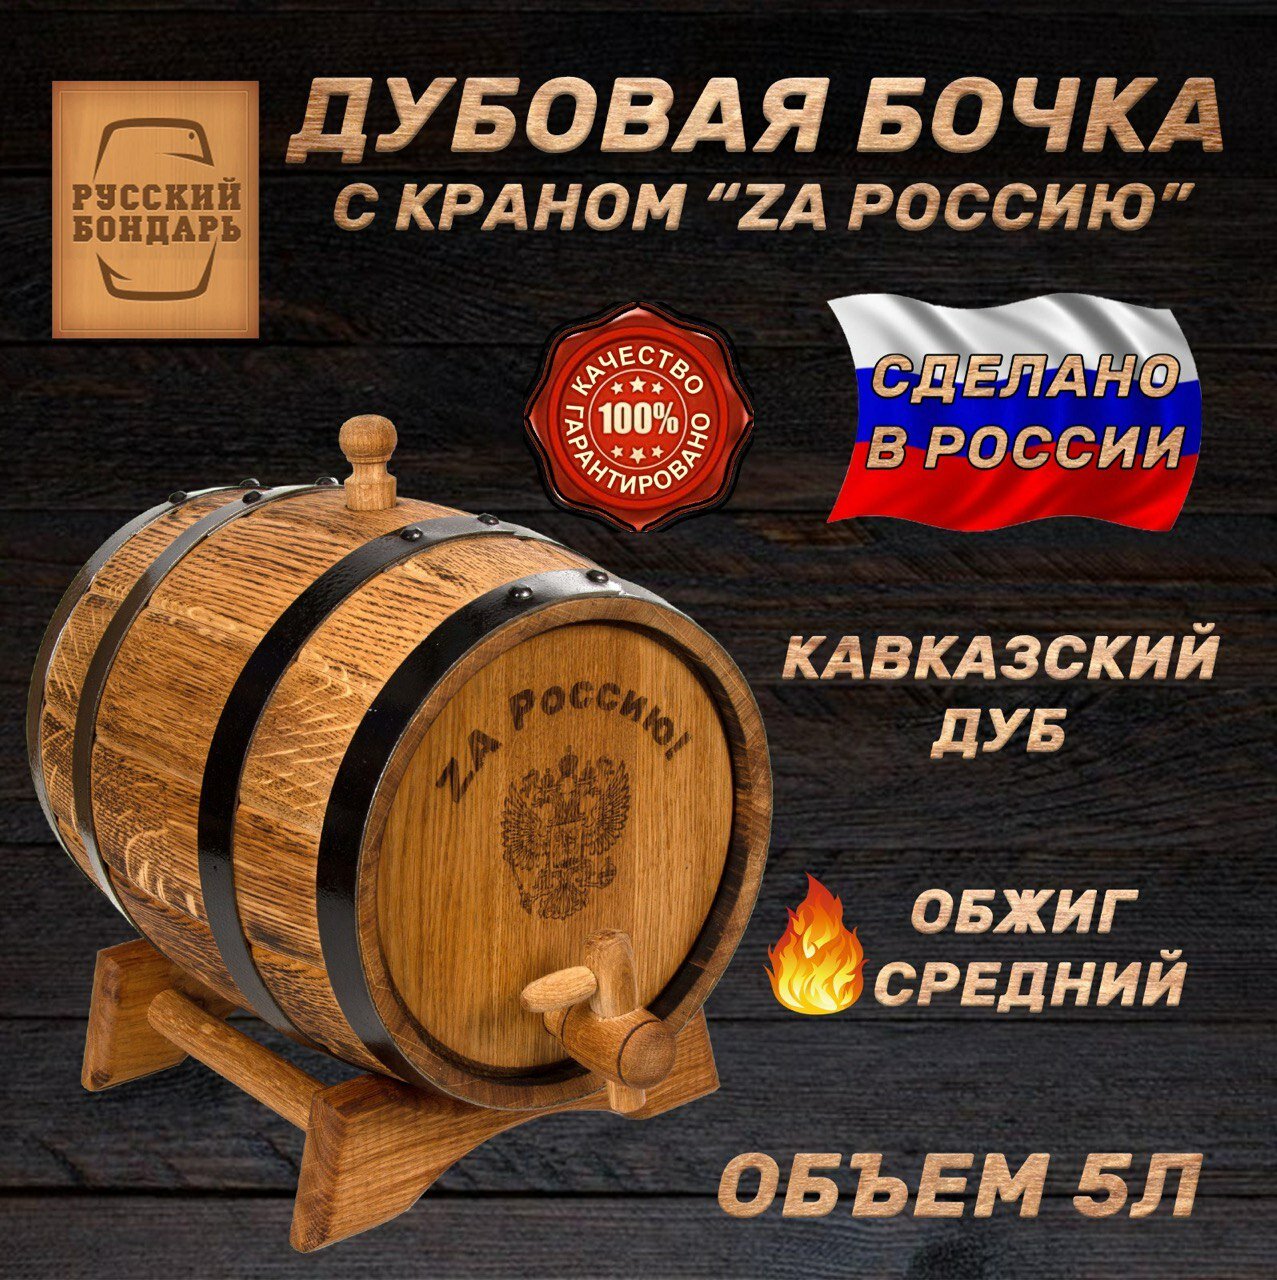 Дубовая бочка 5 литров для алкоголя - "ZA Россию". Ручной работы. Русский Бондарь